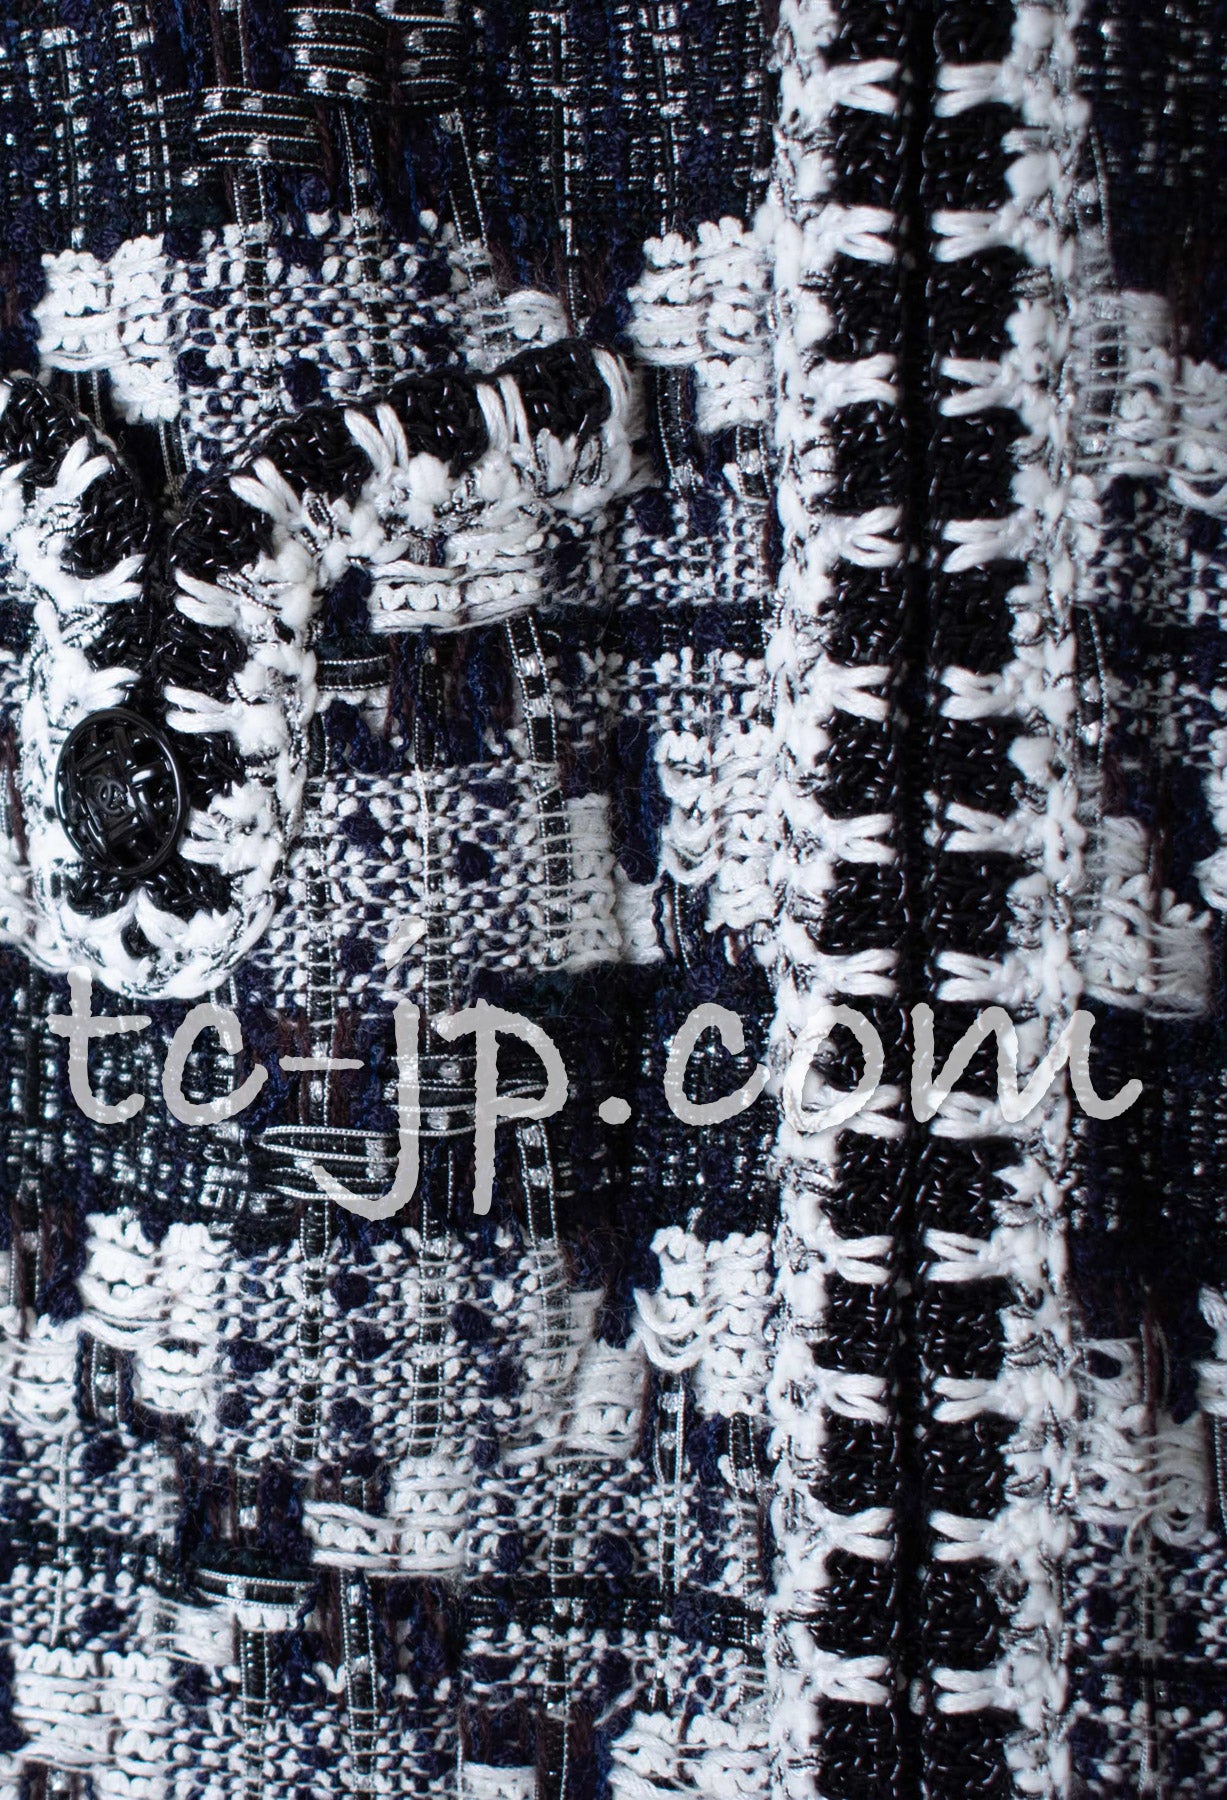 CHANEL 06C Black White Tweed Jacket Skirt Suit 36 38 シャネル ブラック・ホワイト・ツイード・ジャケット・スカート・スーツ 即発